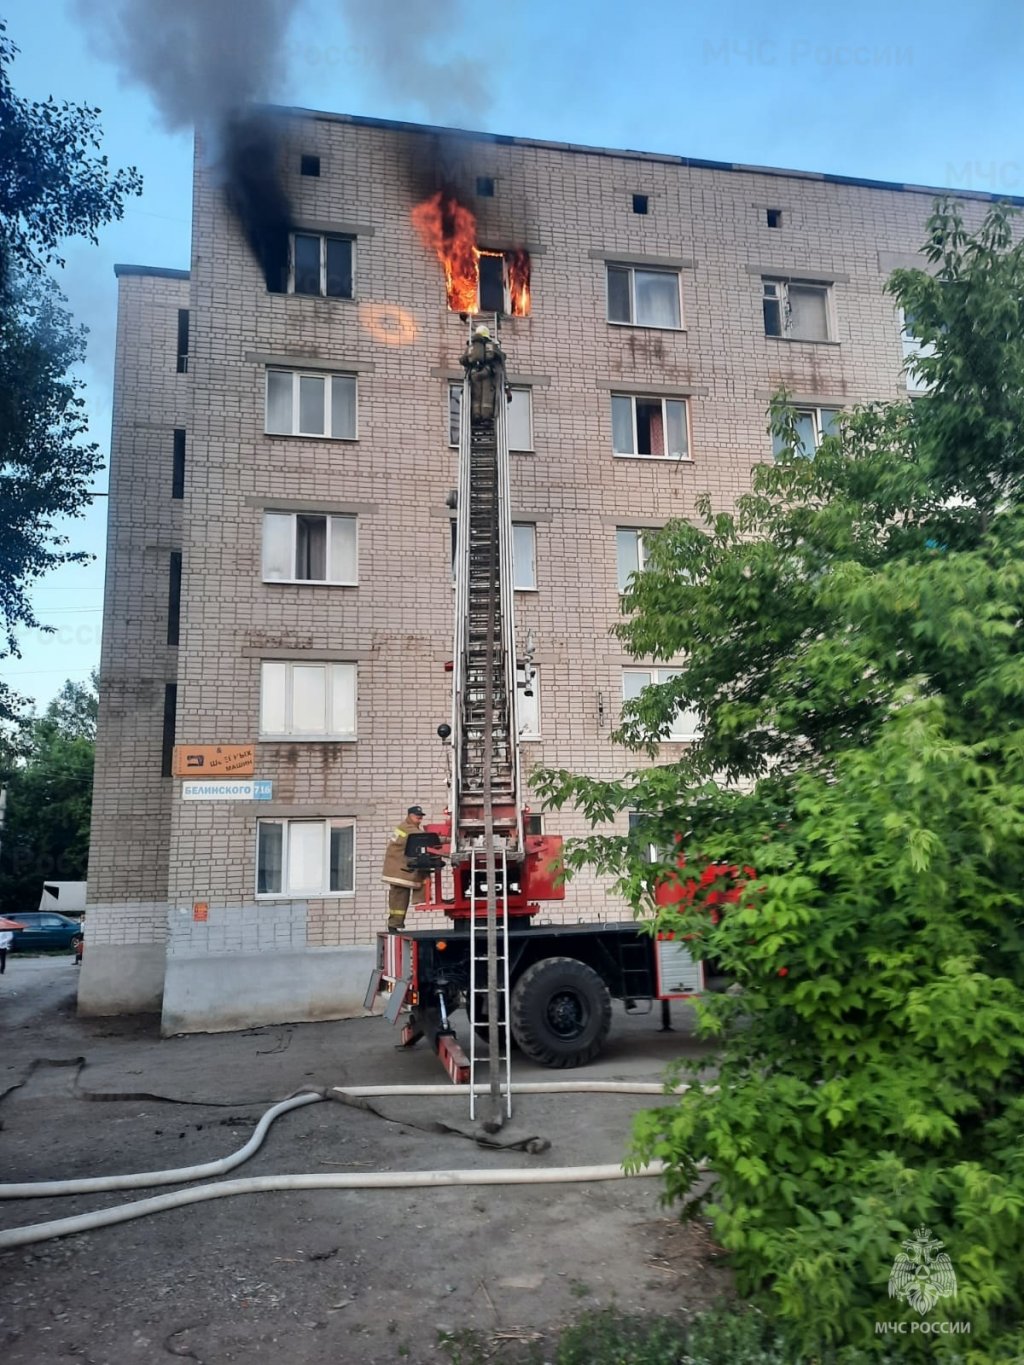 Новый День: В Каменске-Уральском в пожаре погиб мужчина (ФОТО)